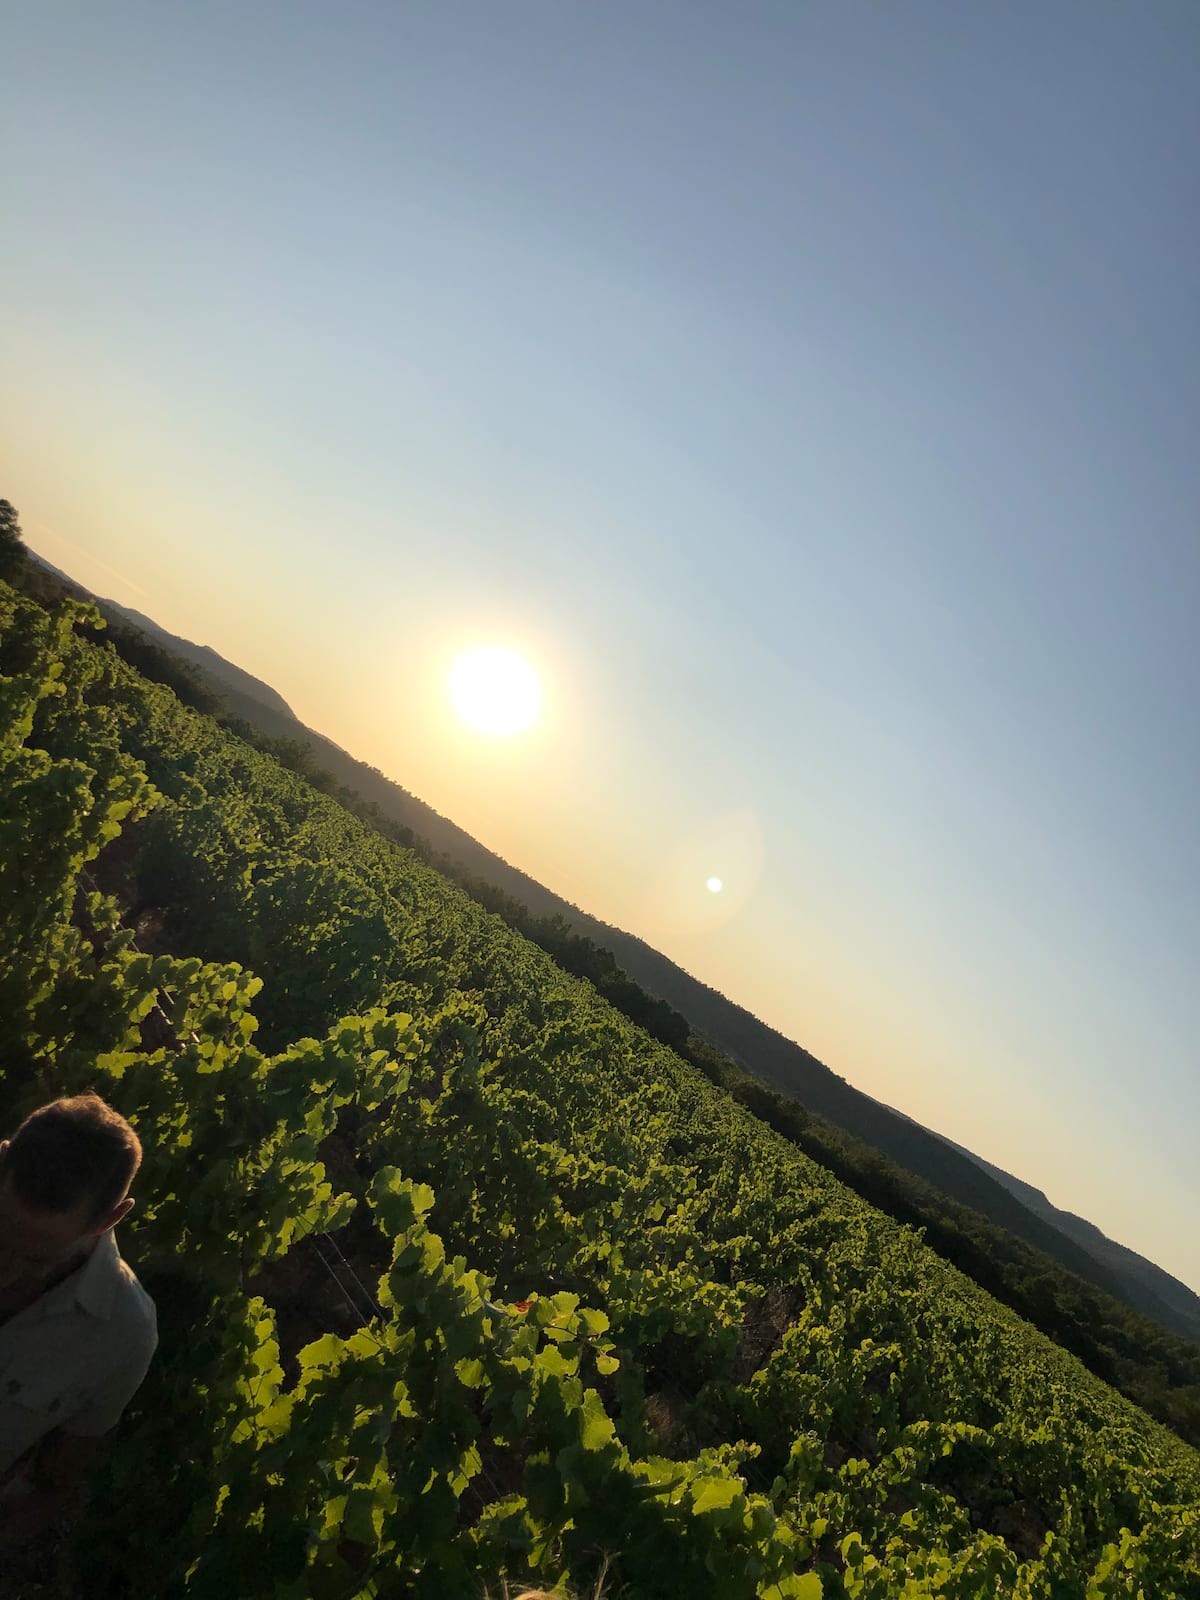 Le soleil se couche sur la vigne